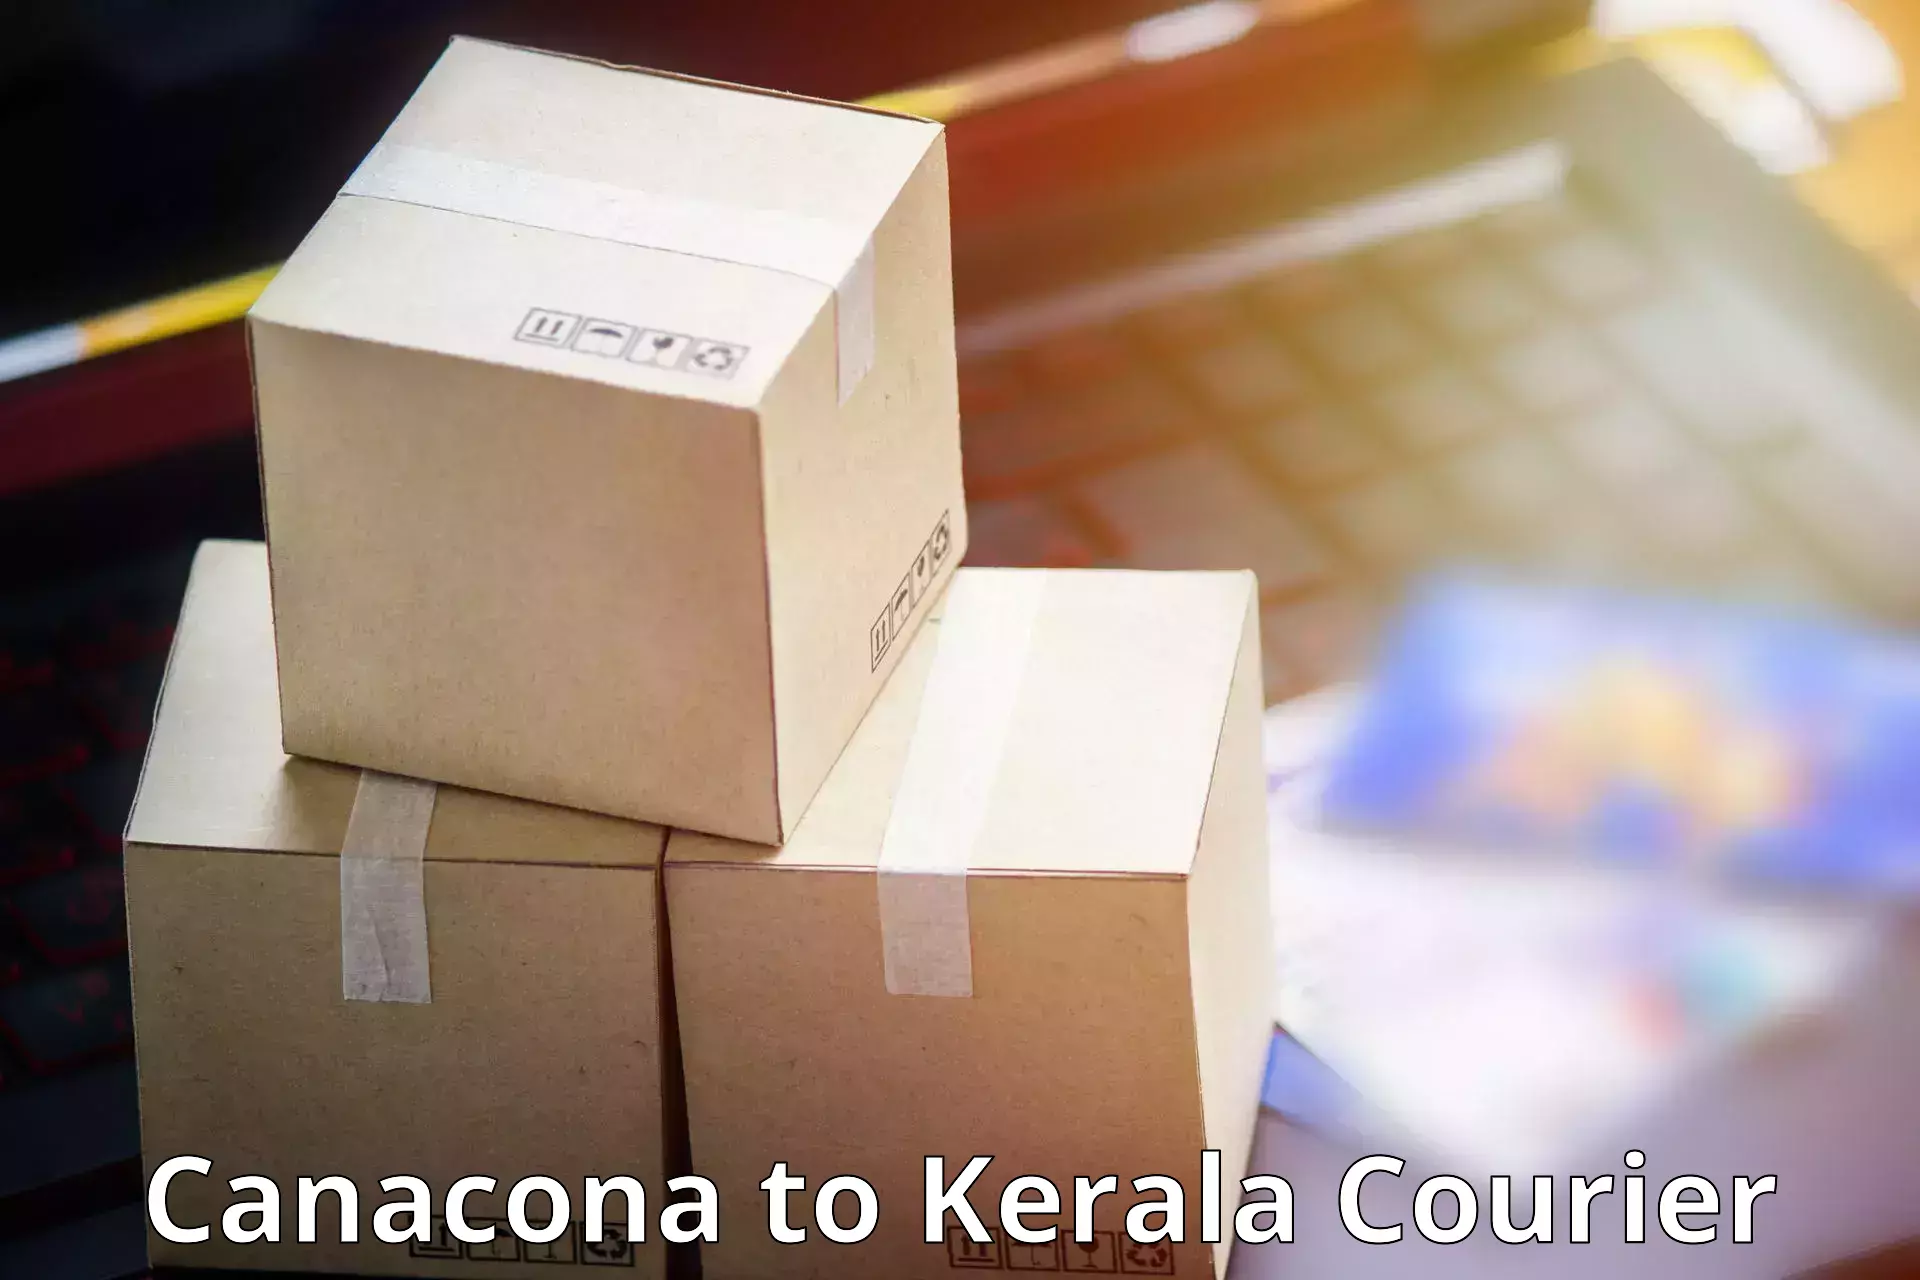 Tech-enabled shipping Canacona to Mundakayam